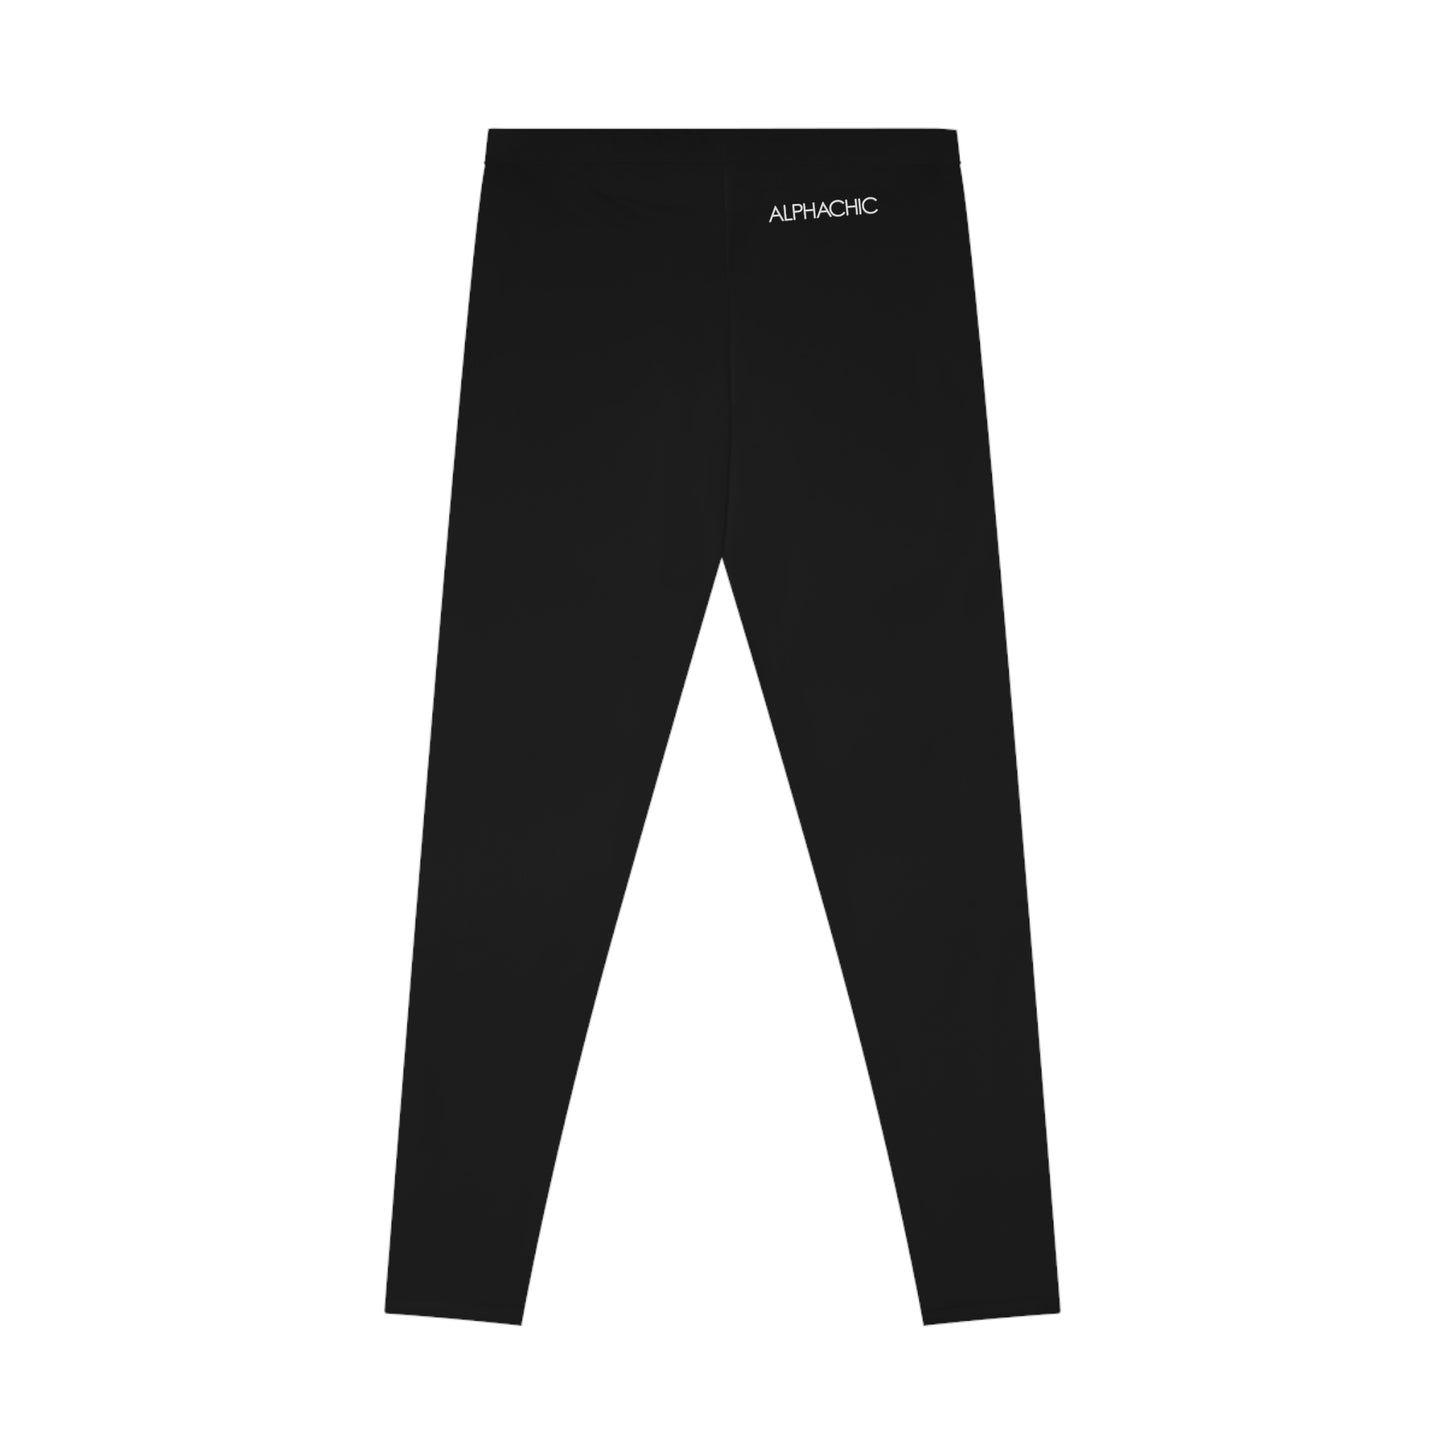 AlphaChic Leggings - Black (Back Logo)